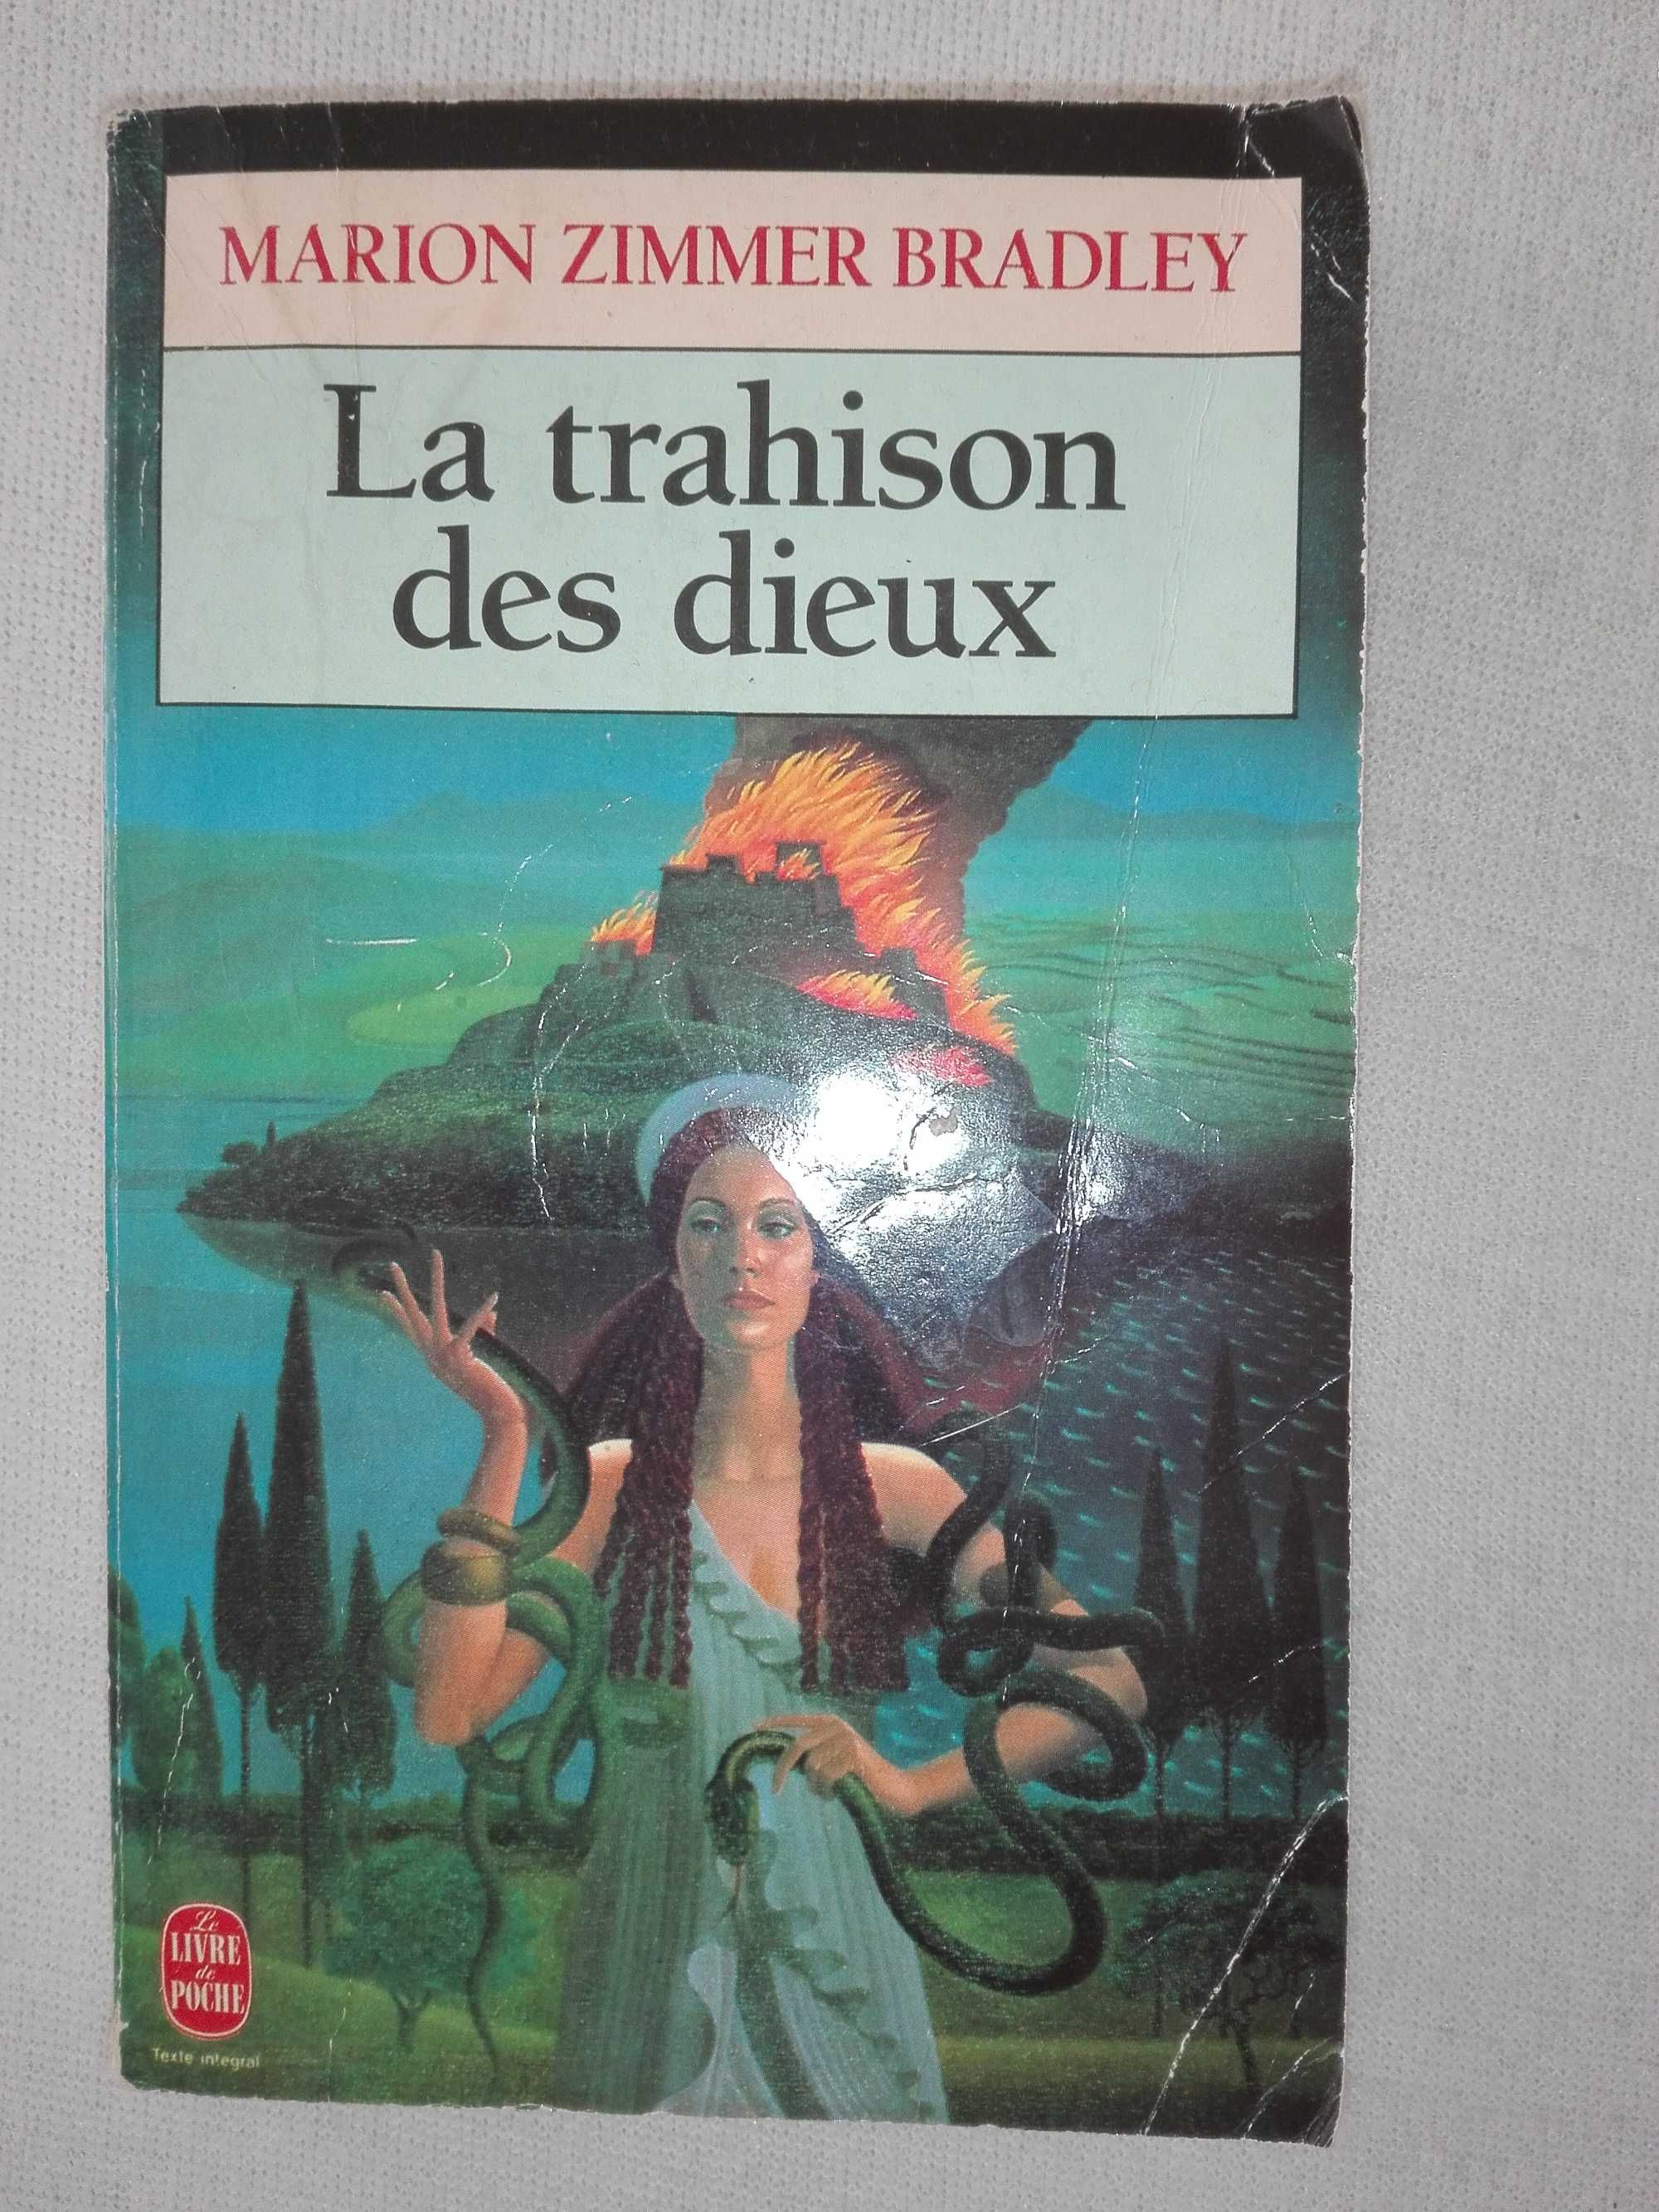 M. Zimmer Bradley - La trahison des dieux,książka w języku francuskim